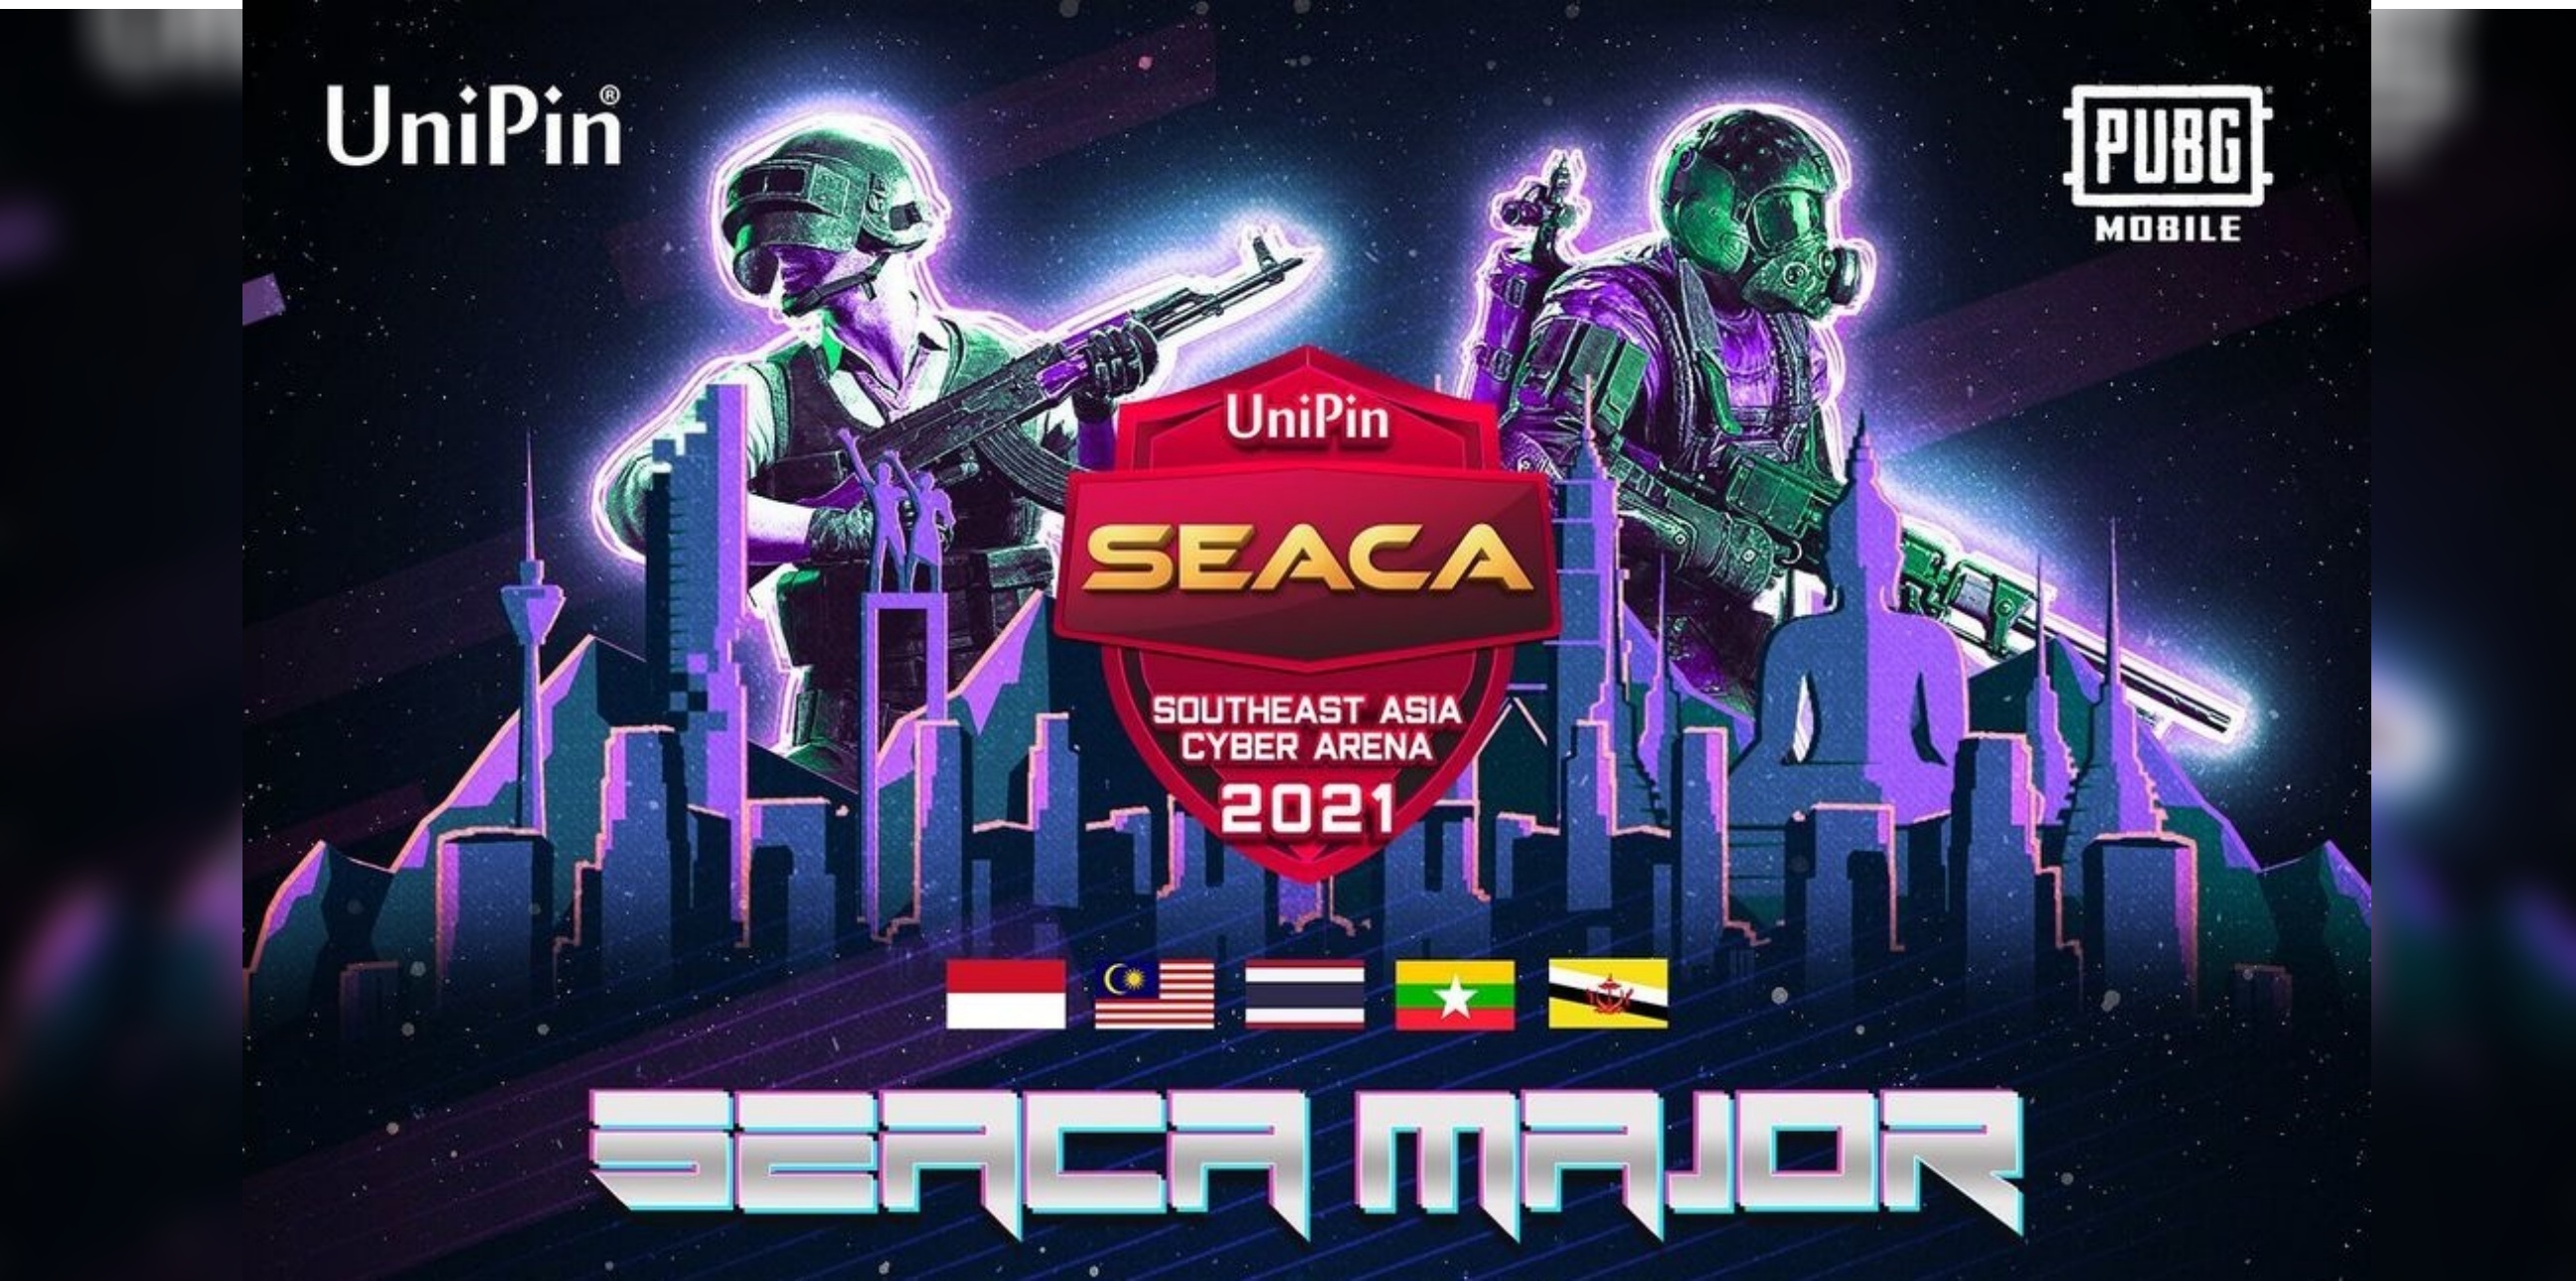 4 Keseruan UniPin SEACA 2021, panggung laga tim e-Sports Asia Tenggara